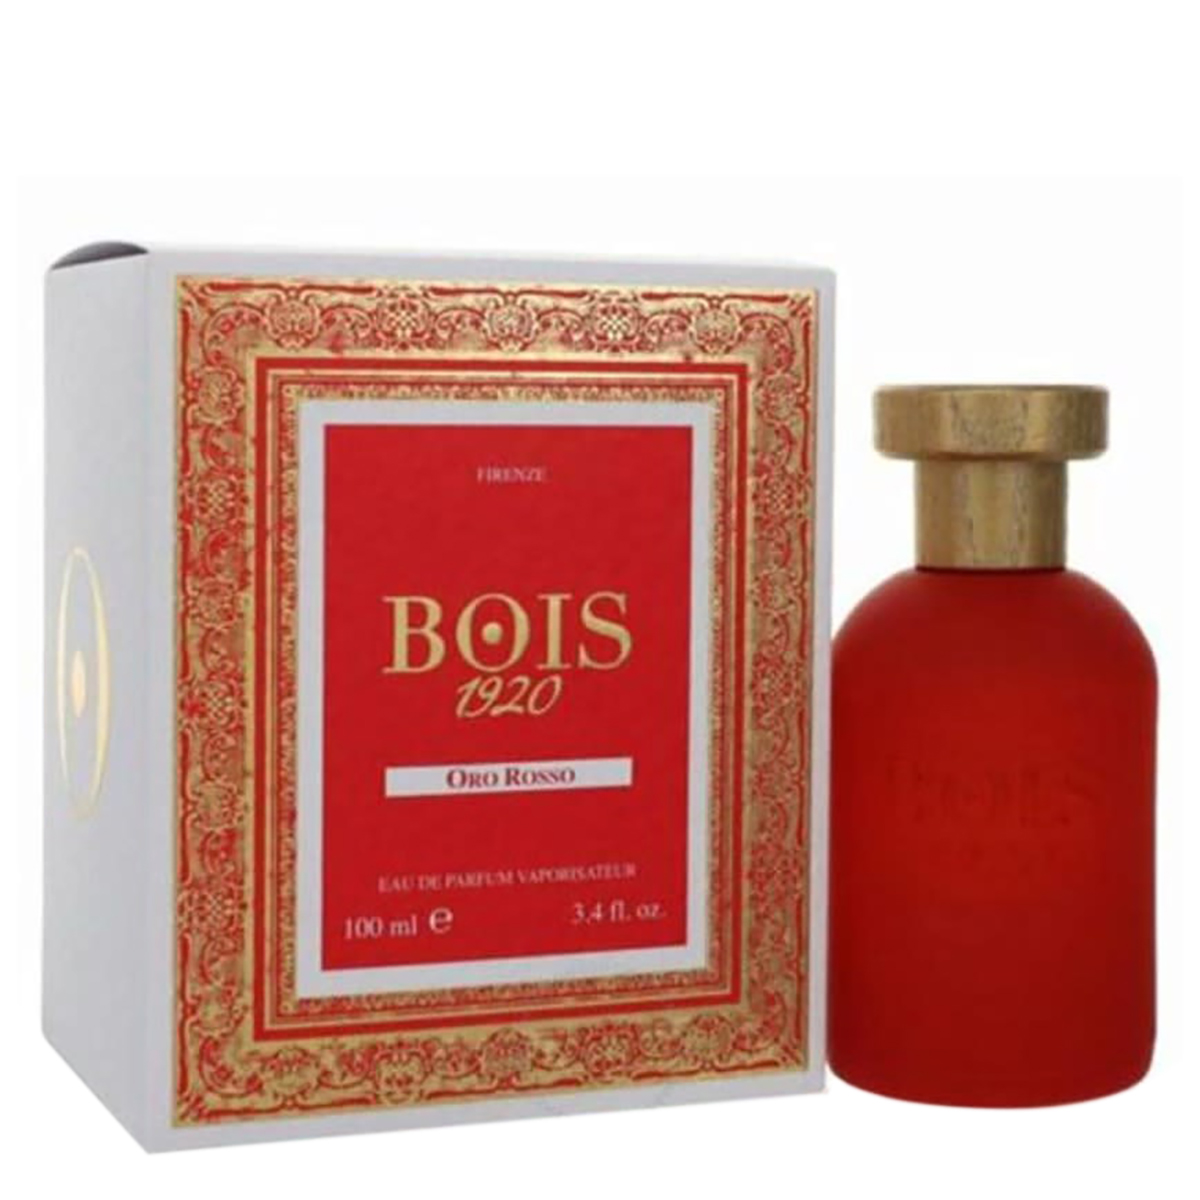 Bois 1920 Unisex Oro Rosso Edp Spray 3.4 oz Fragrances 8055277280305 In N/a